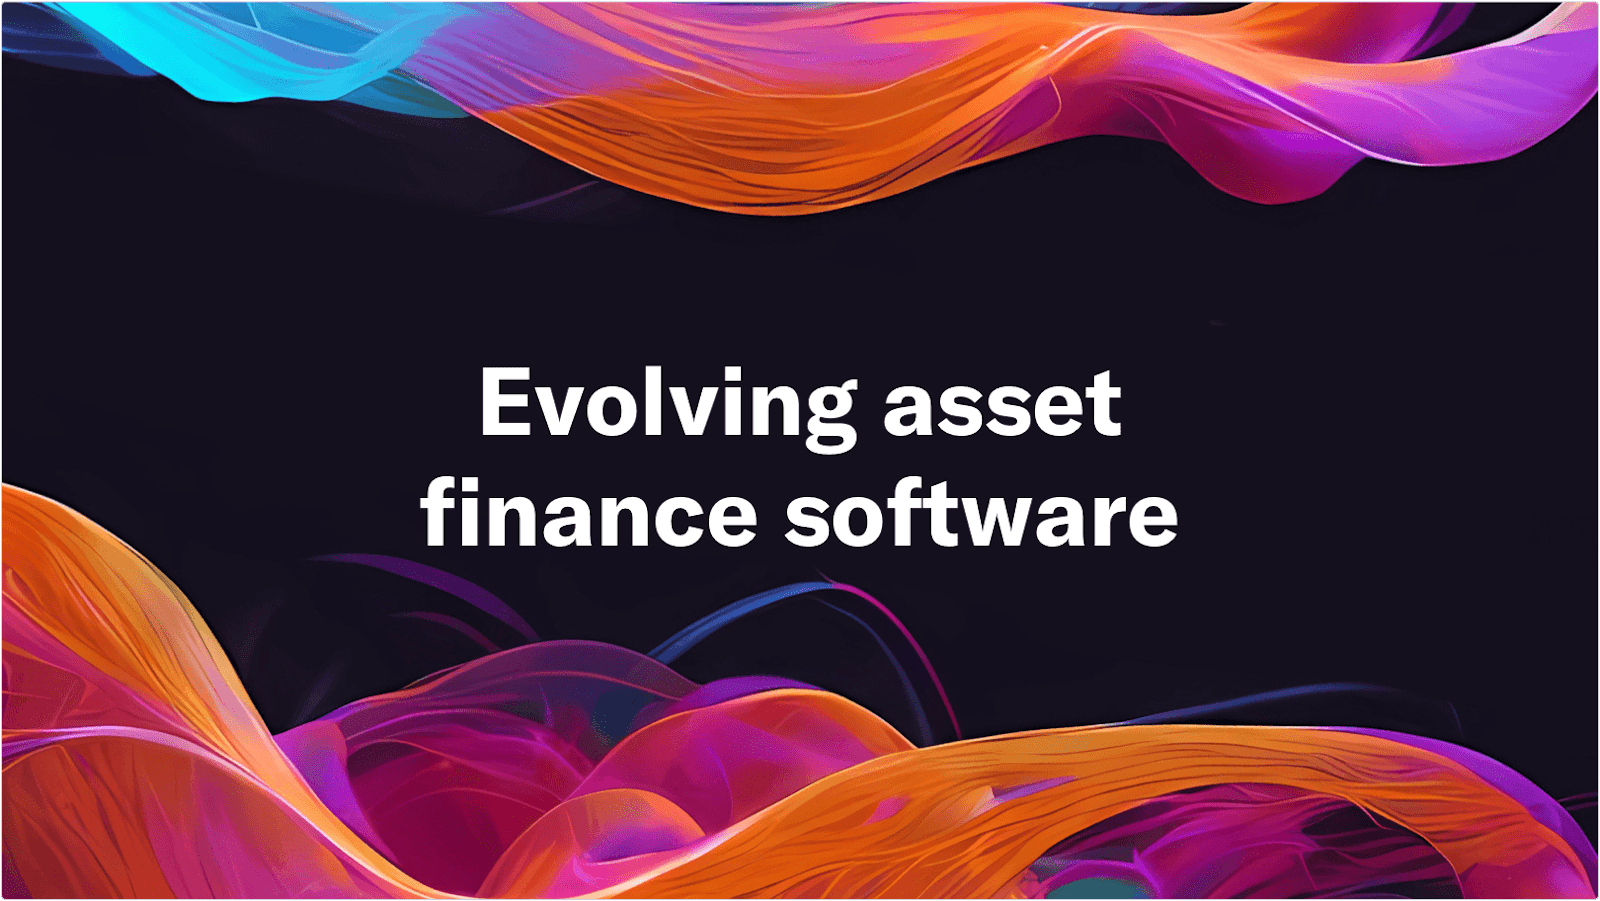 Evolving asset finance software text